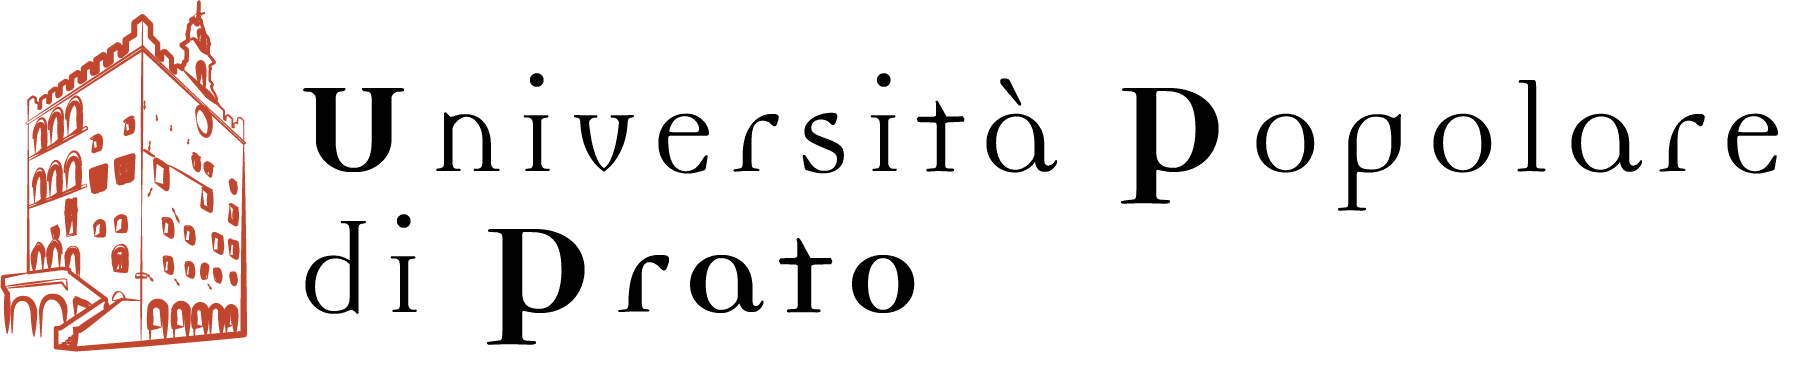 UniPop Prato | Università Popolare di Prato – 